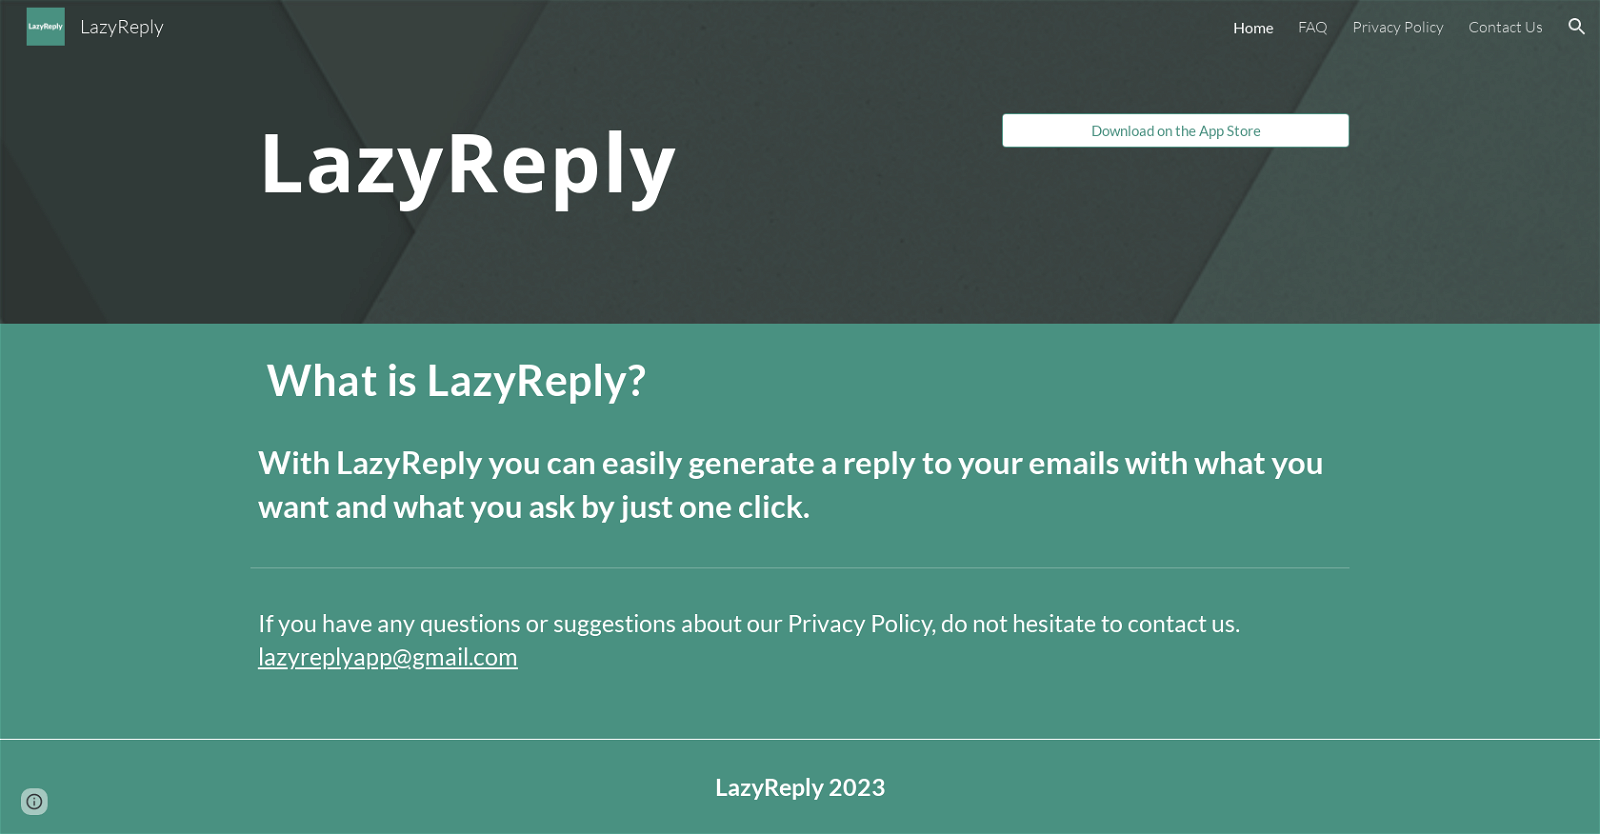 LazyReply